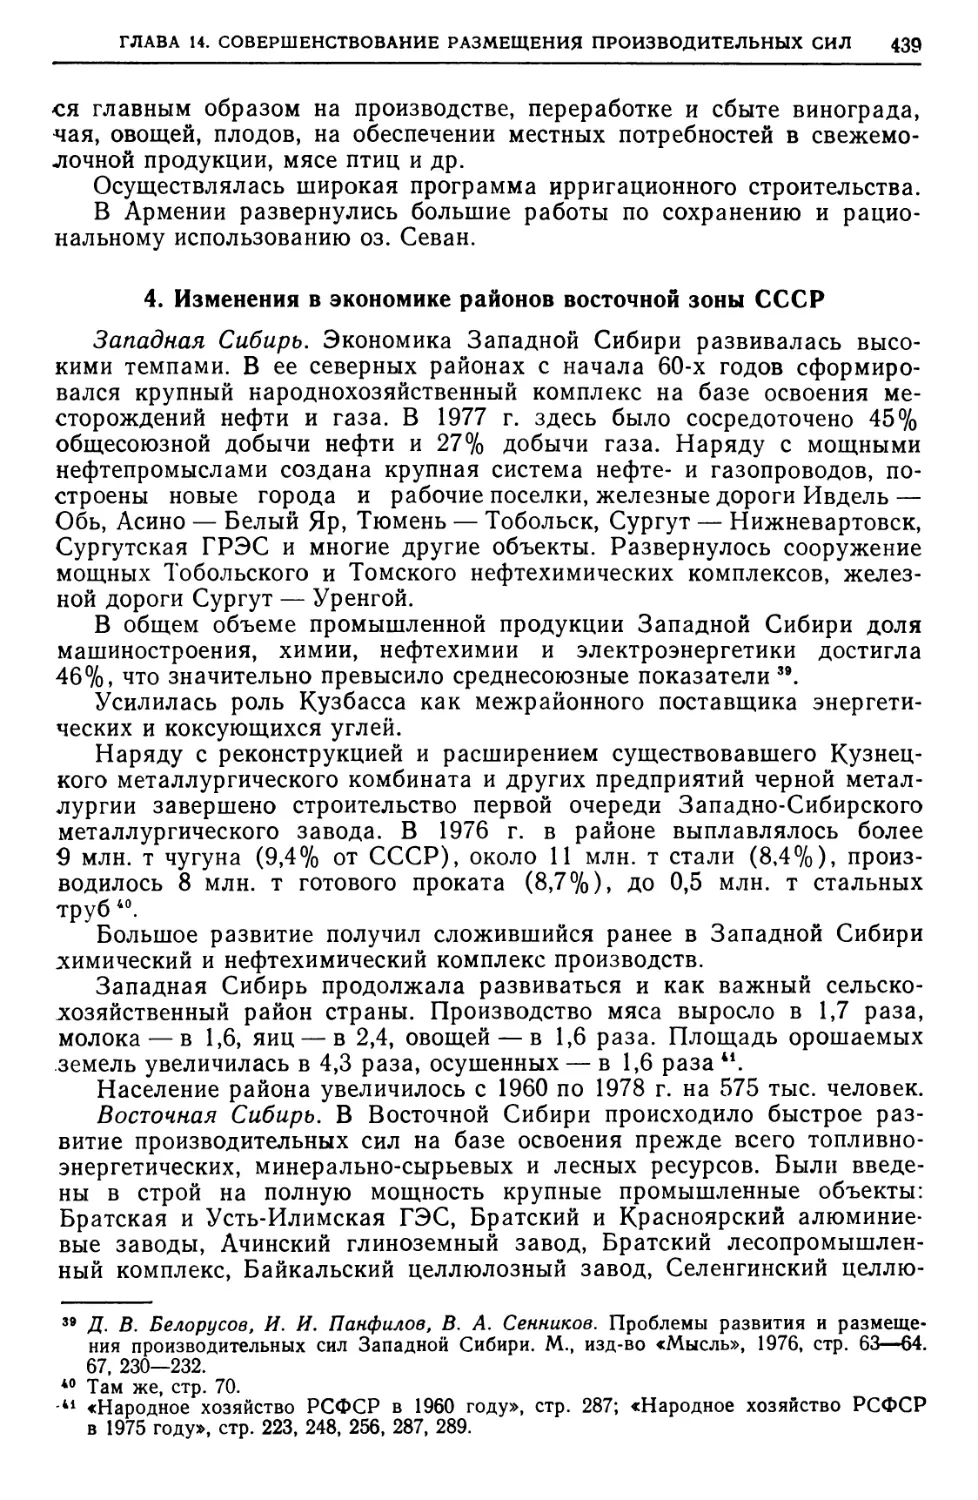 4. Изменения в экономике районов восточной зоны СССР